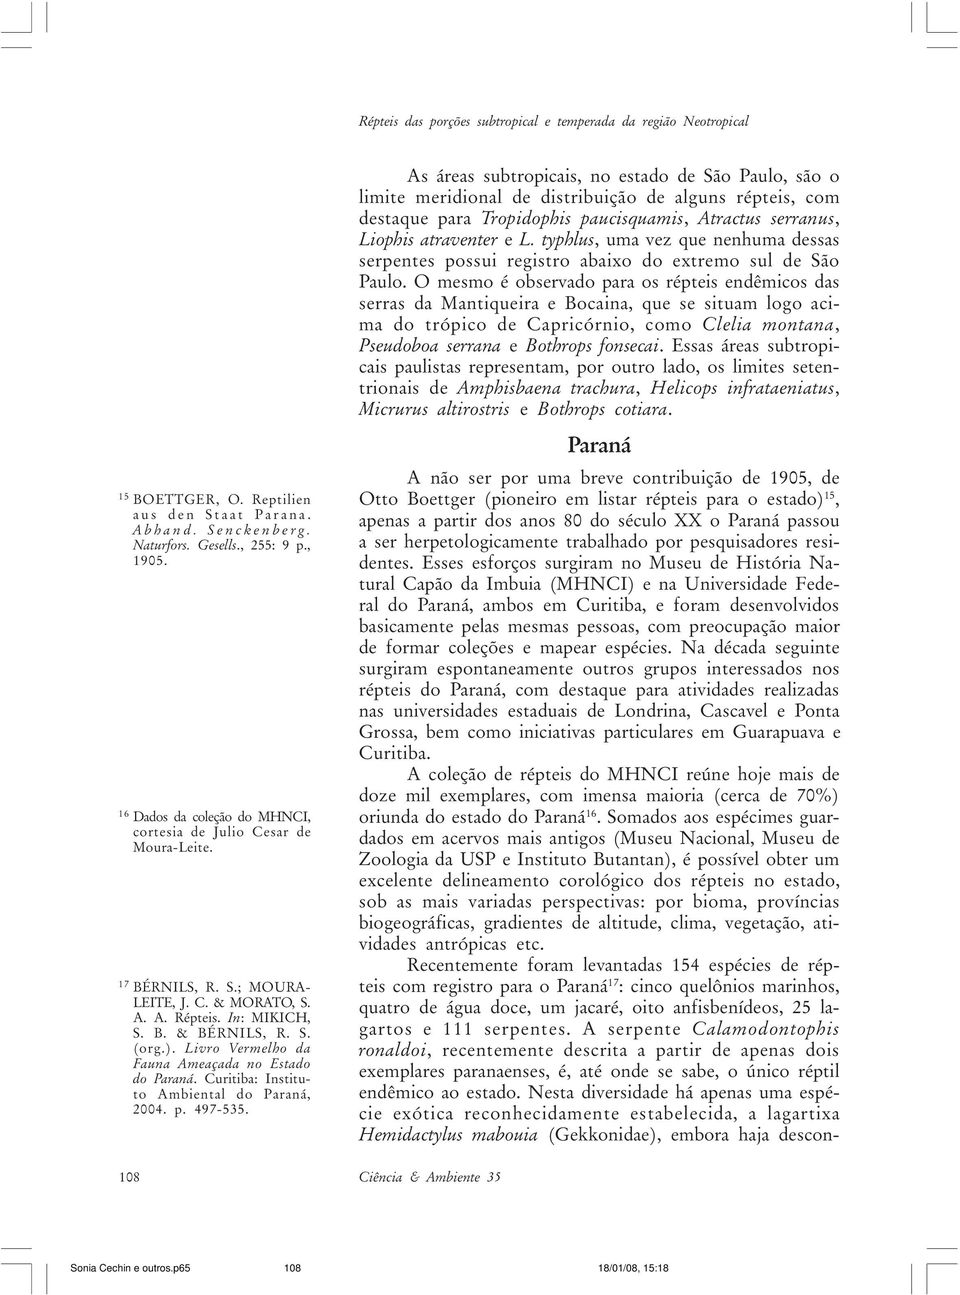 Livro Vermelho da Fauna Ameaçada no Estado do Paraná. Curitiba: Instituto Ambiental do Paraná, 2004. p. 497-535.